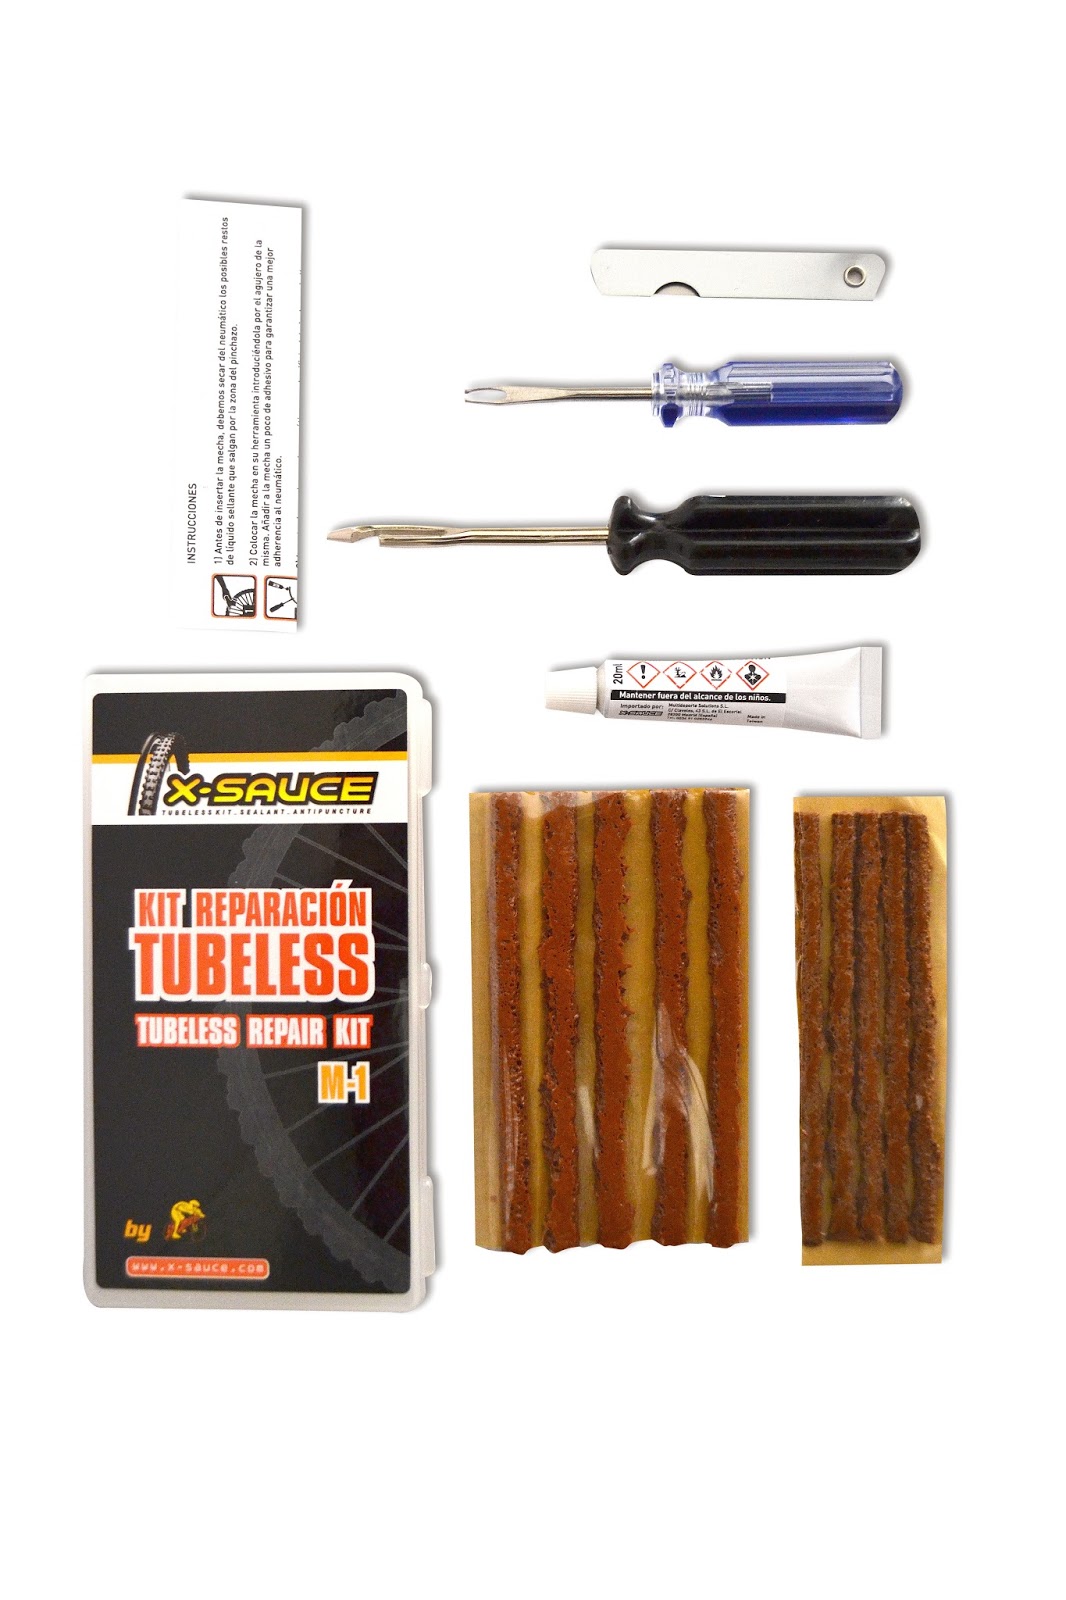 Nuevos kits de mechas para reparación de neumáticos tubeless X-Sauce